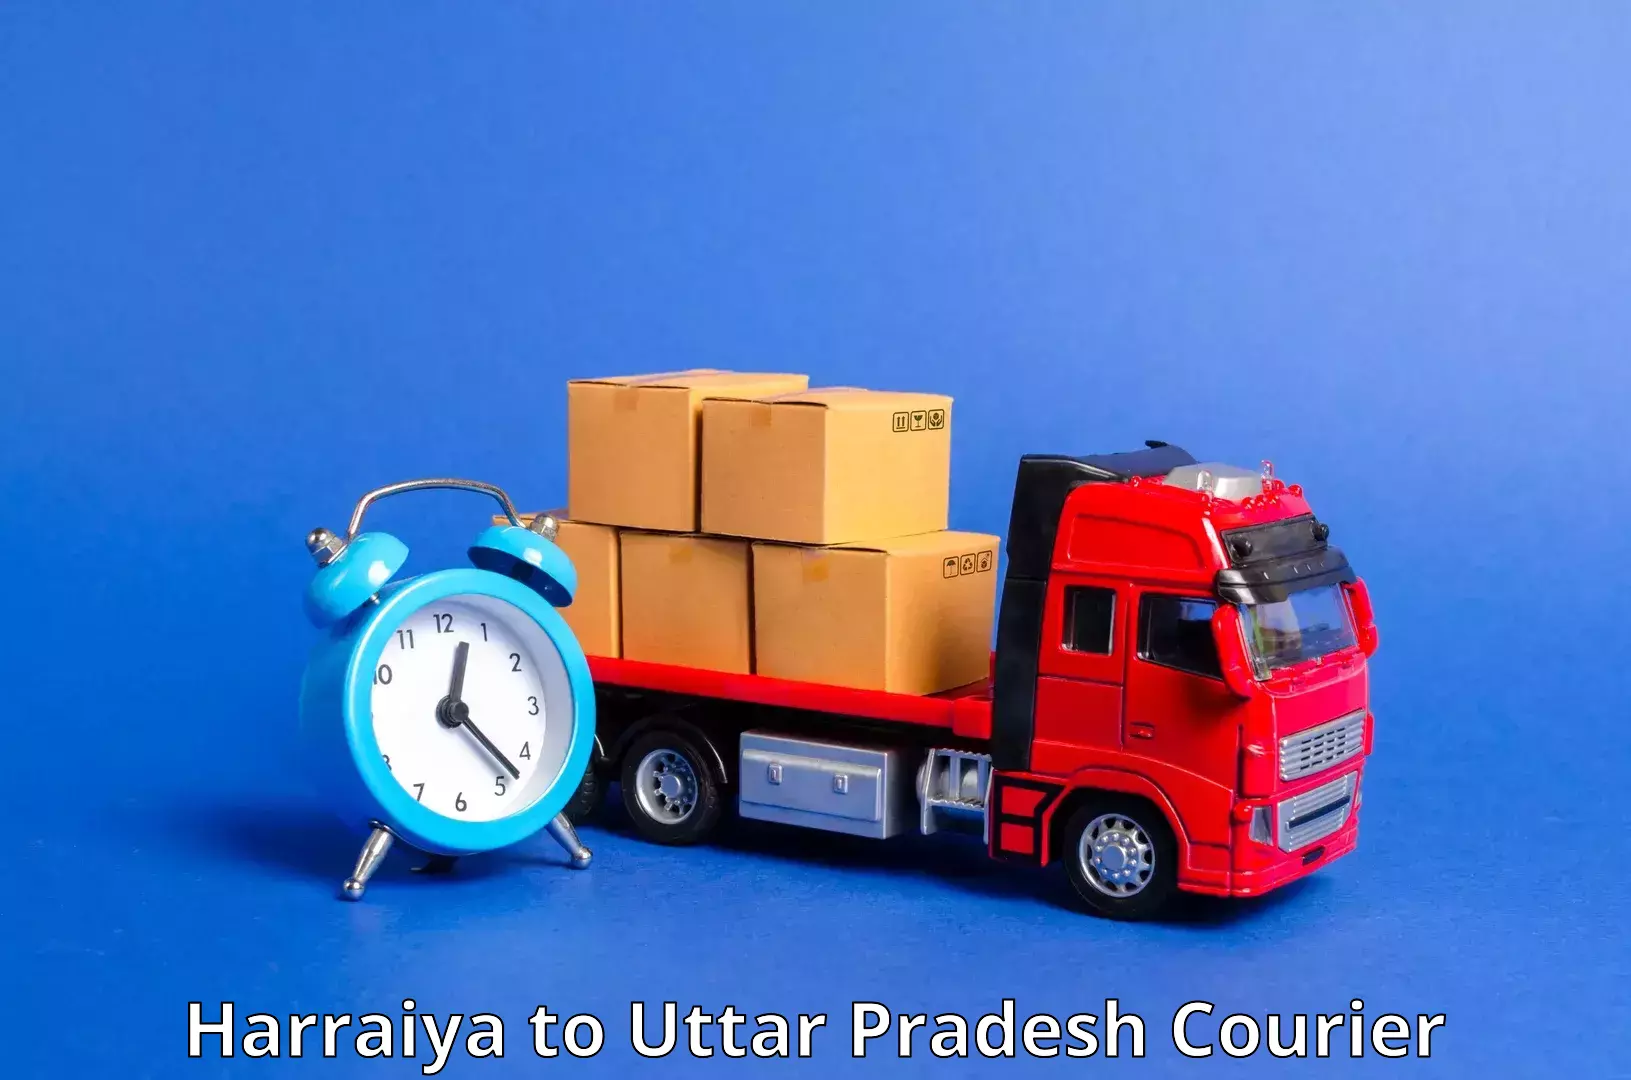 Urgent courier needs Harraiya to Afzalgarh